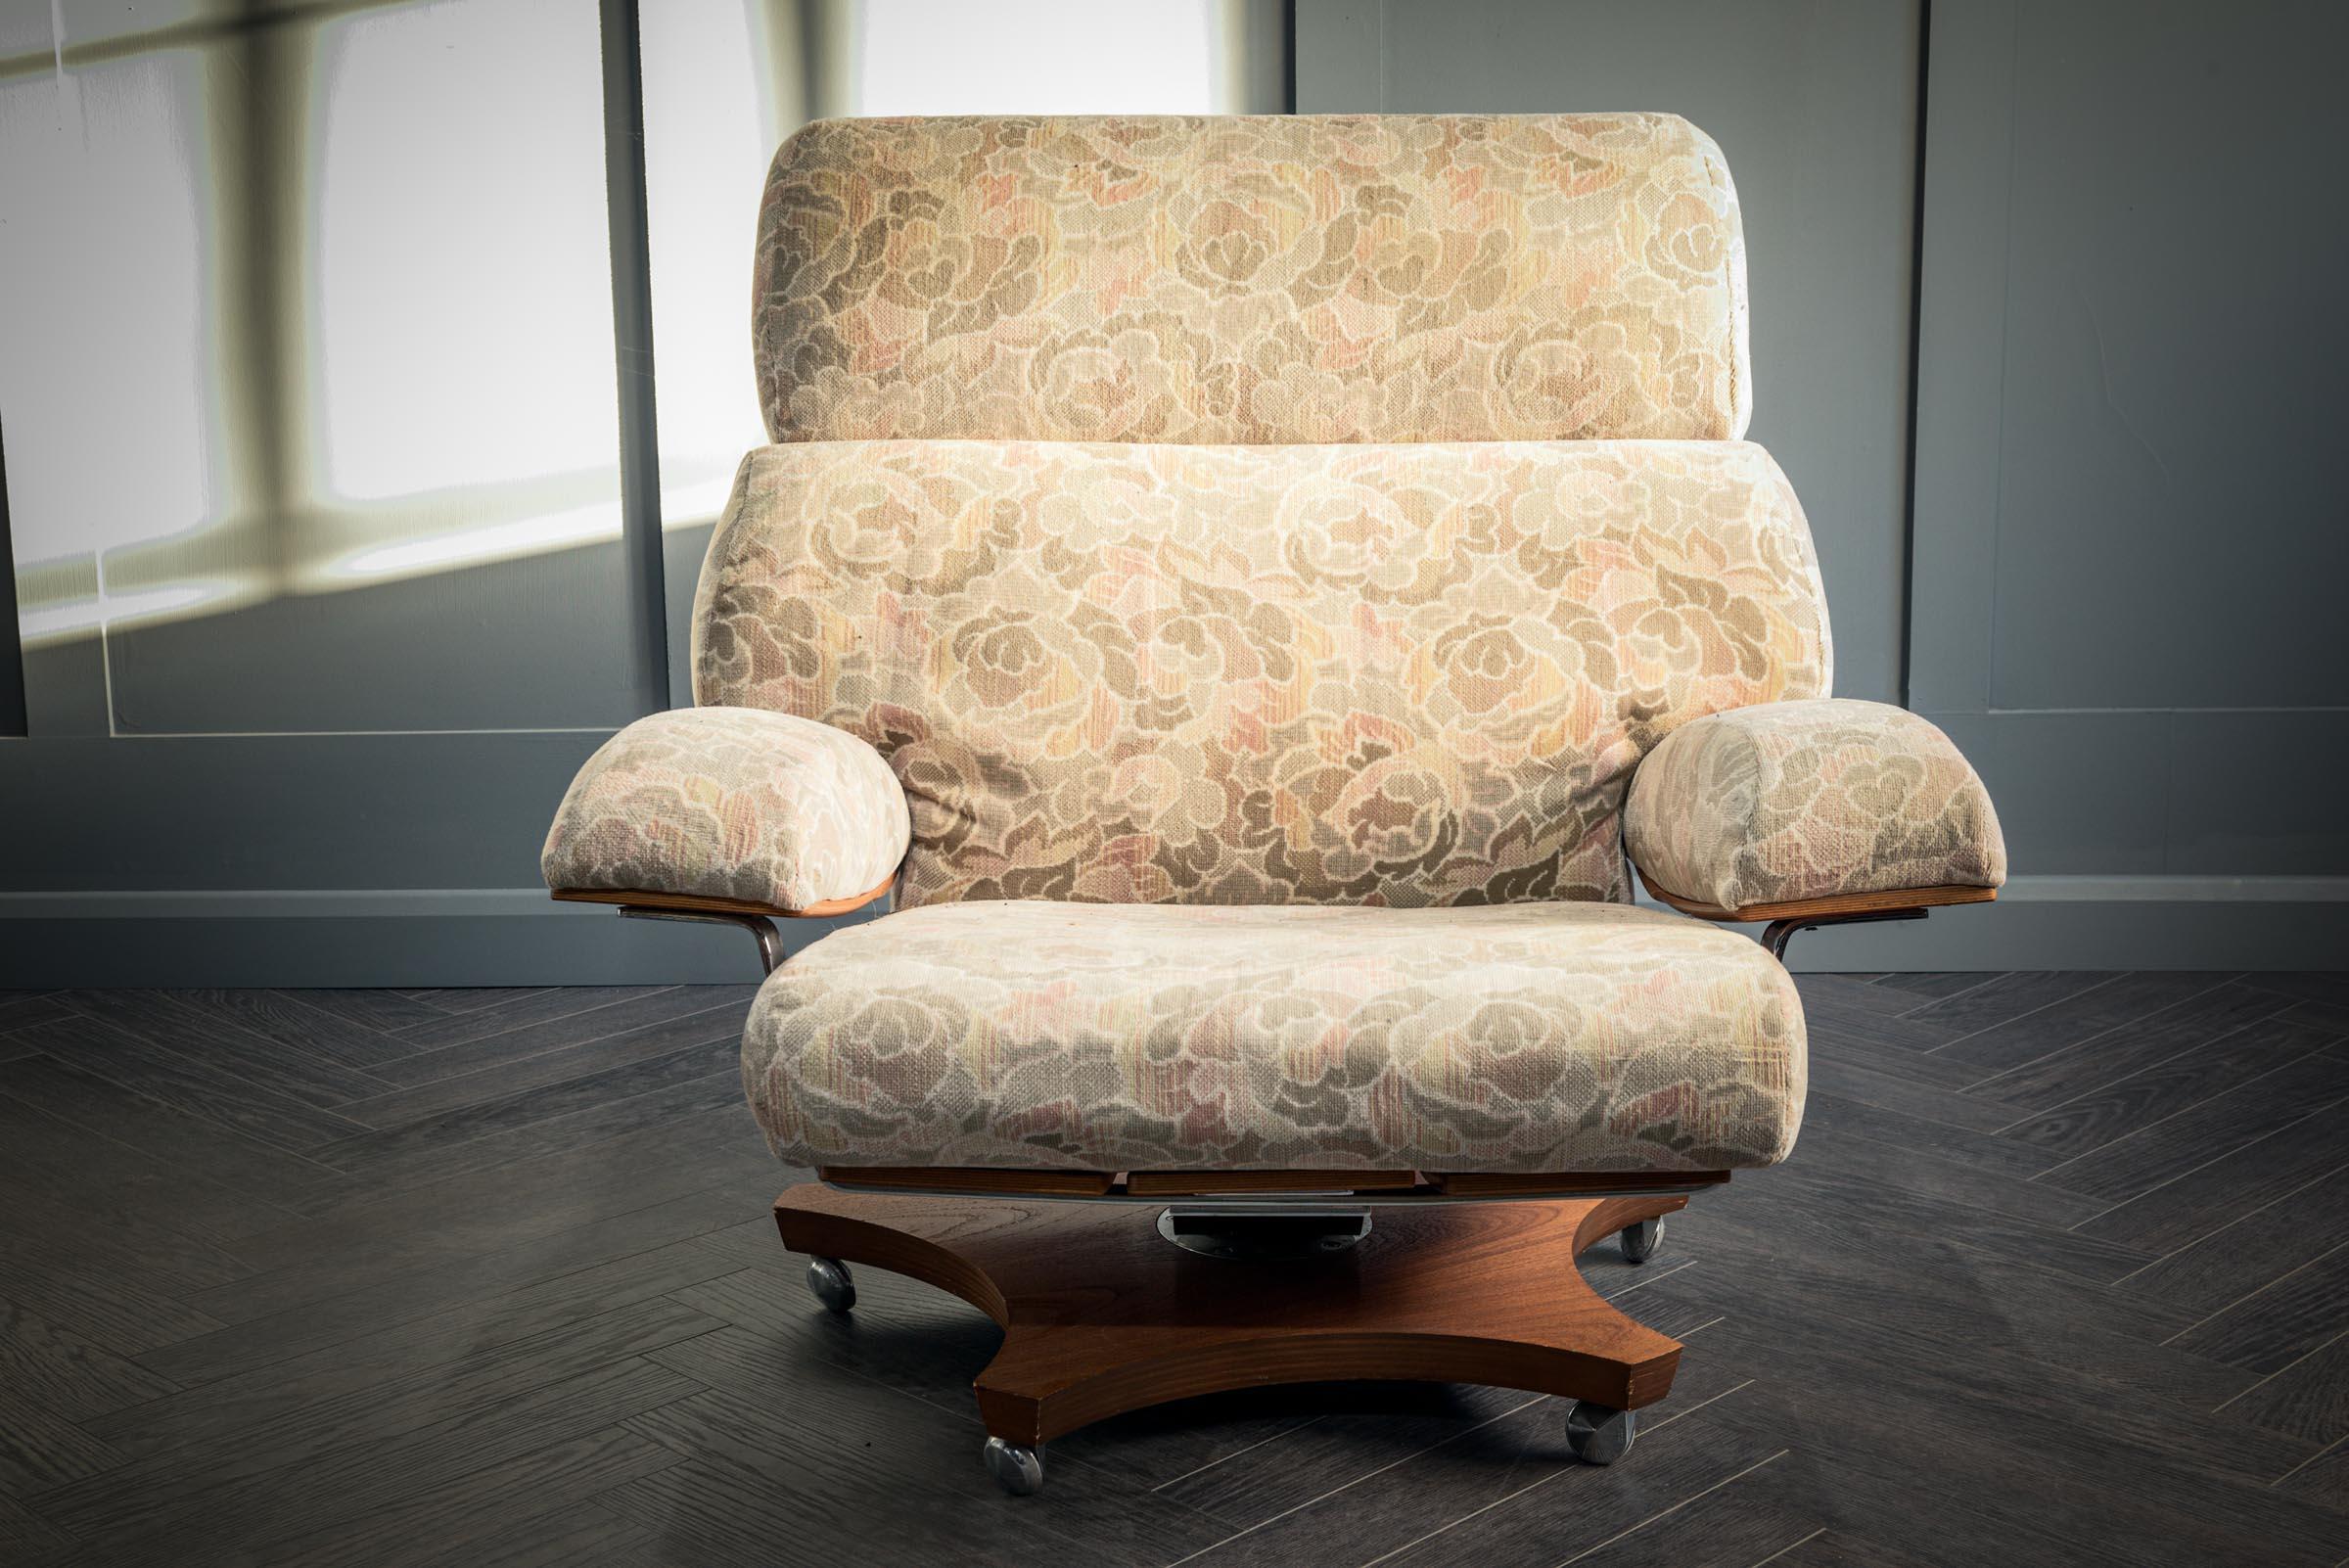 Une chaise pivotante Housemaster du milieu du siècle dernier en teck avec tissu à motifs d'origine et chrome. Vers 1970, ce classique du design a été conçu par K.M-One pour G-Plan. Vendues exclusivement par des maisons comme Harrods et Heal's, ces